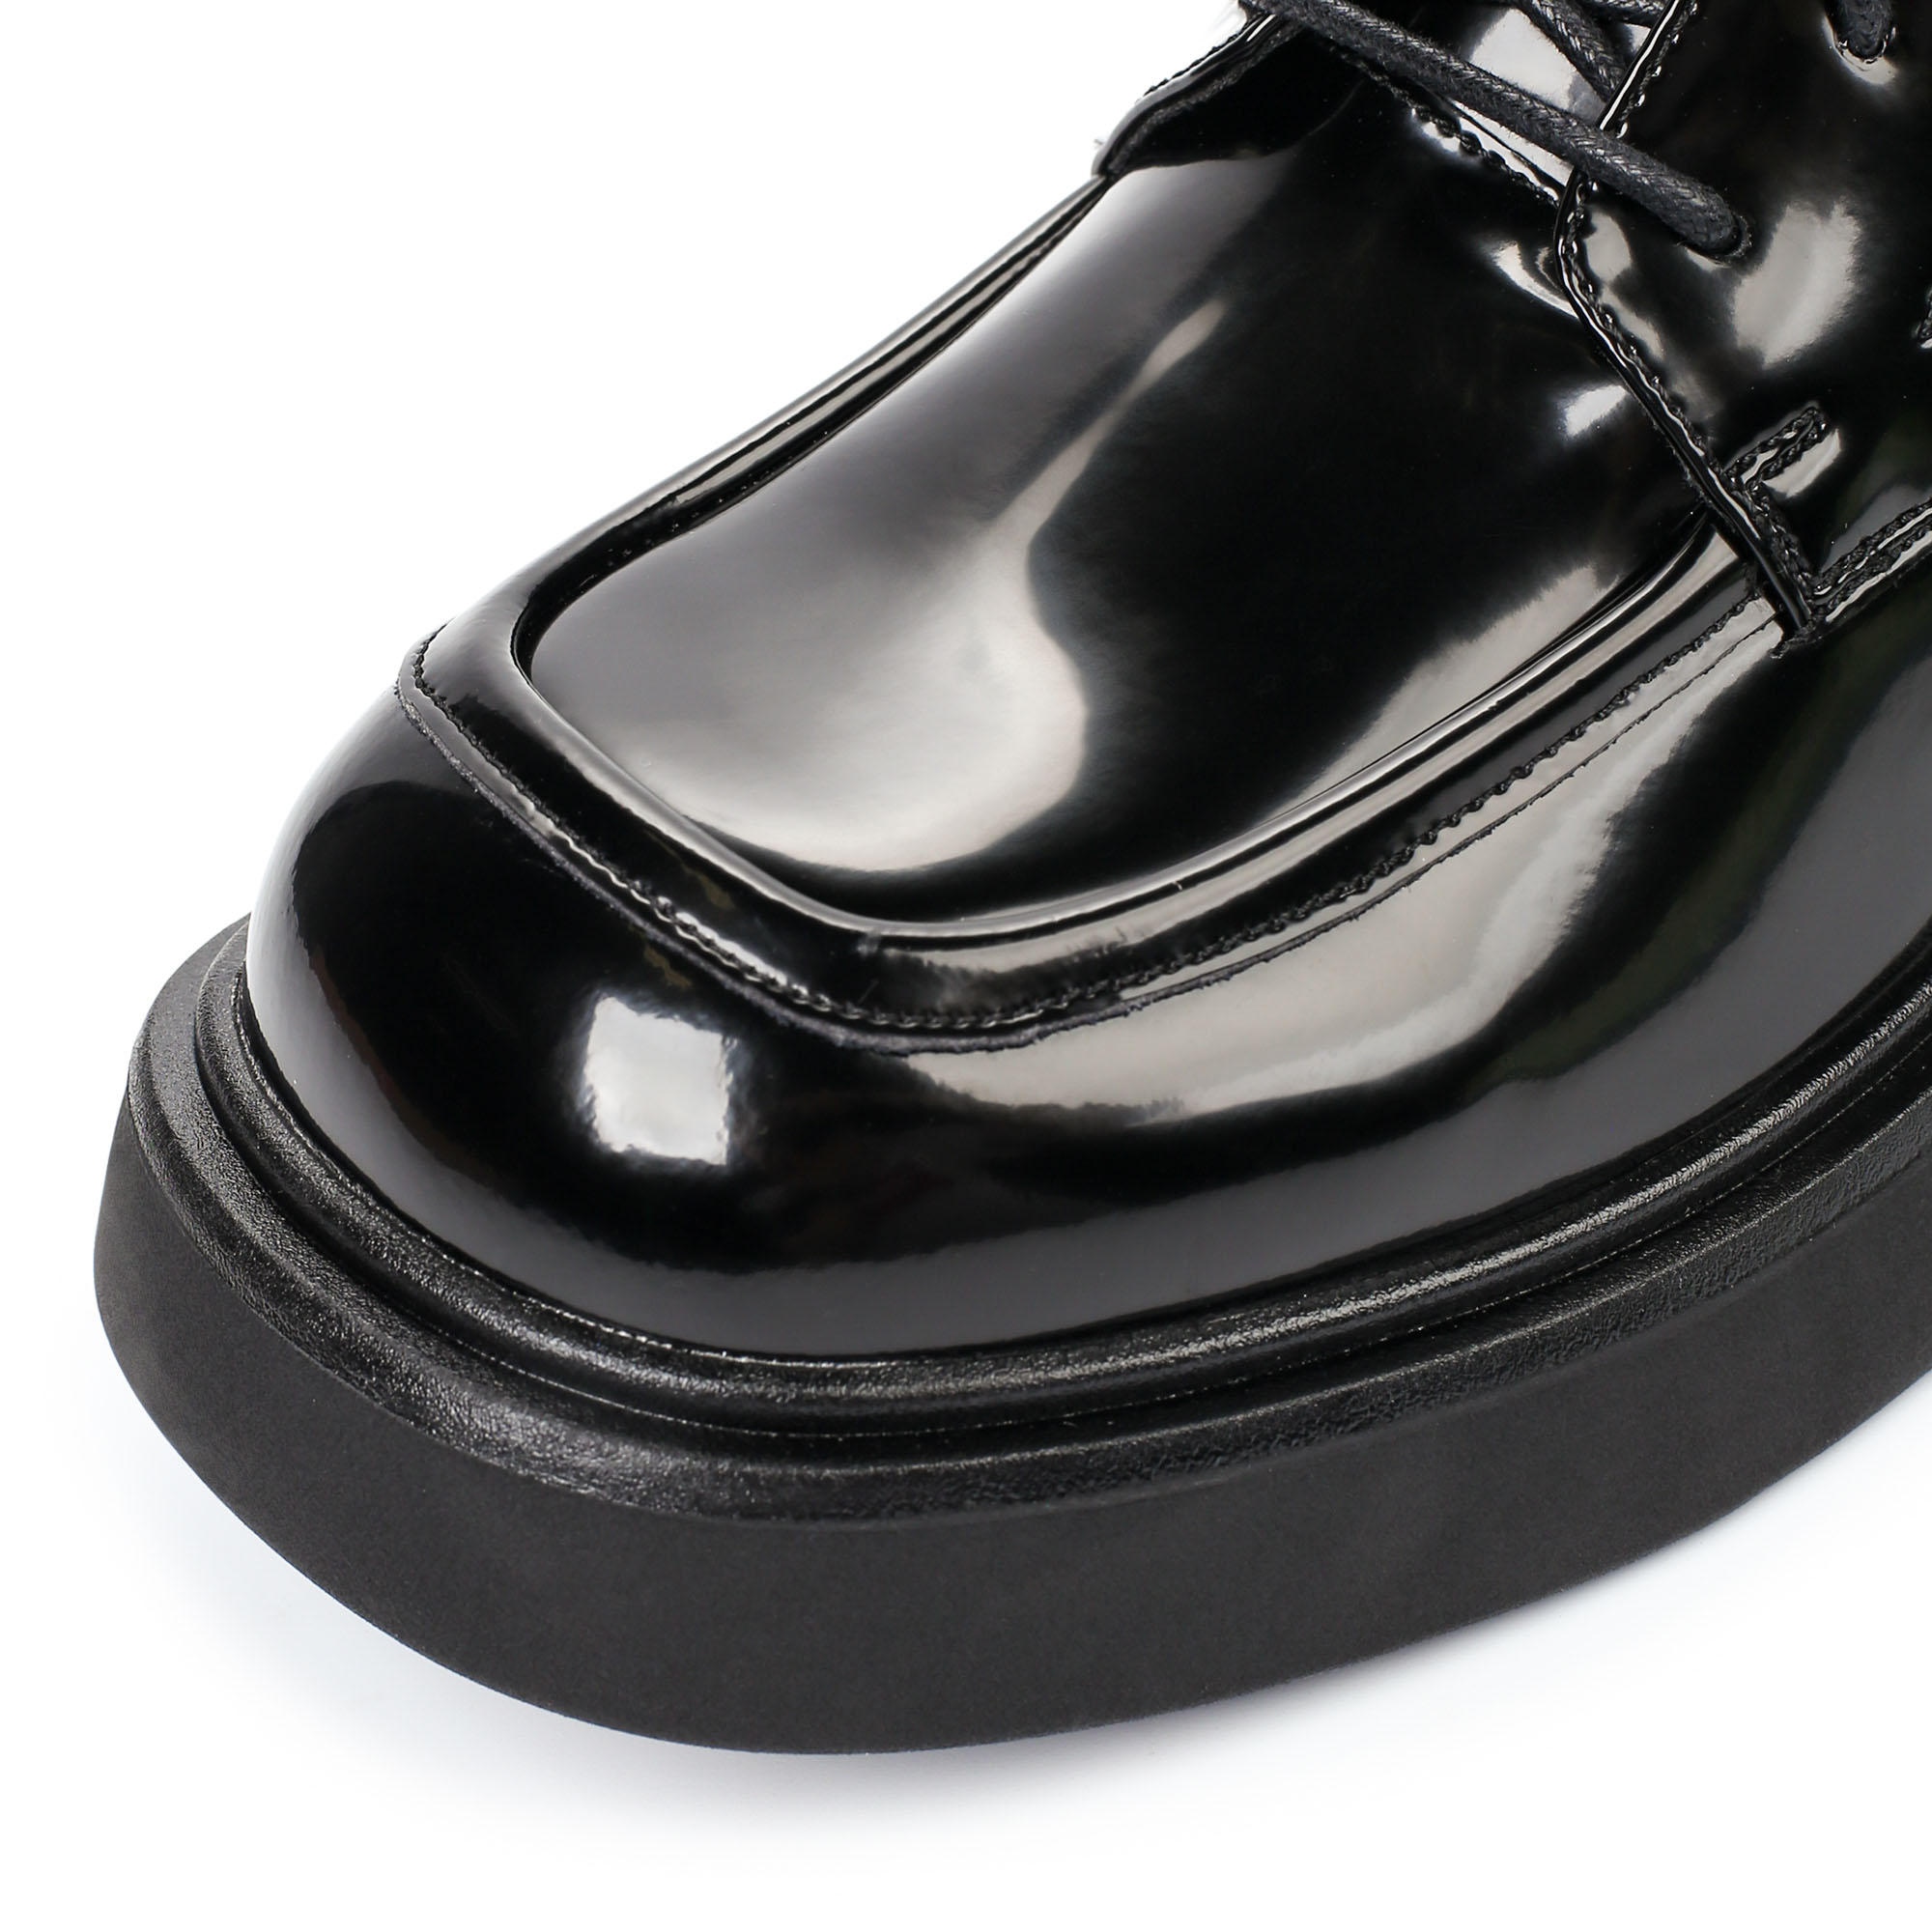 Ботинки Thomas Munz 080-619A-2602, цвет черный, размер 40 - фото 6